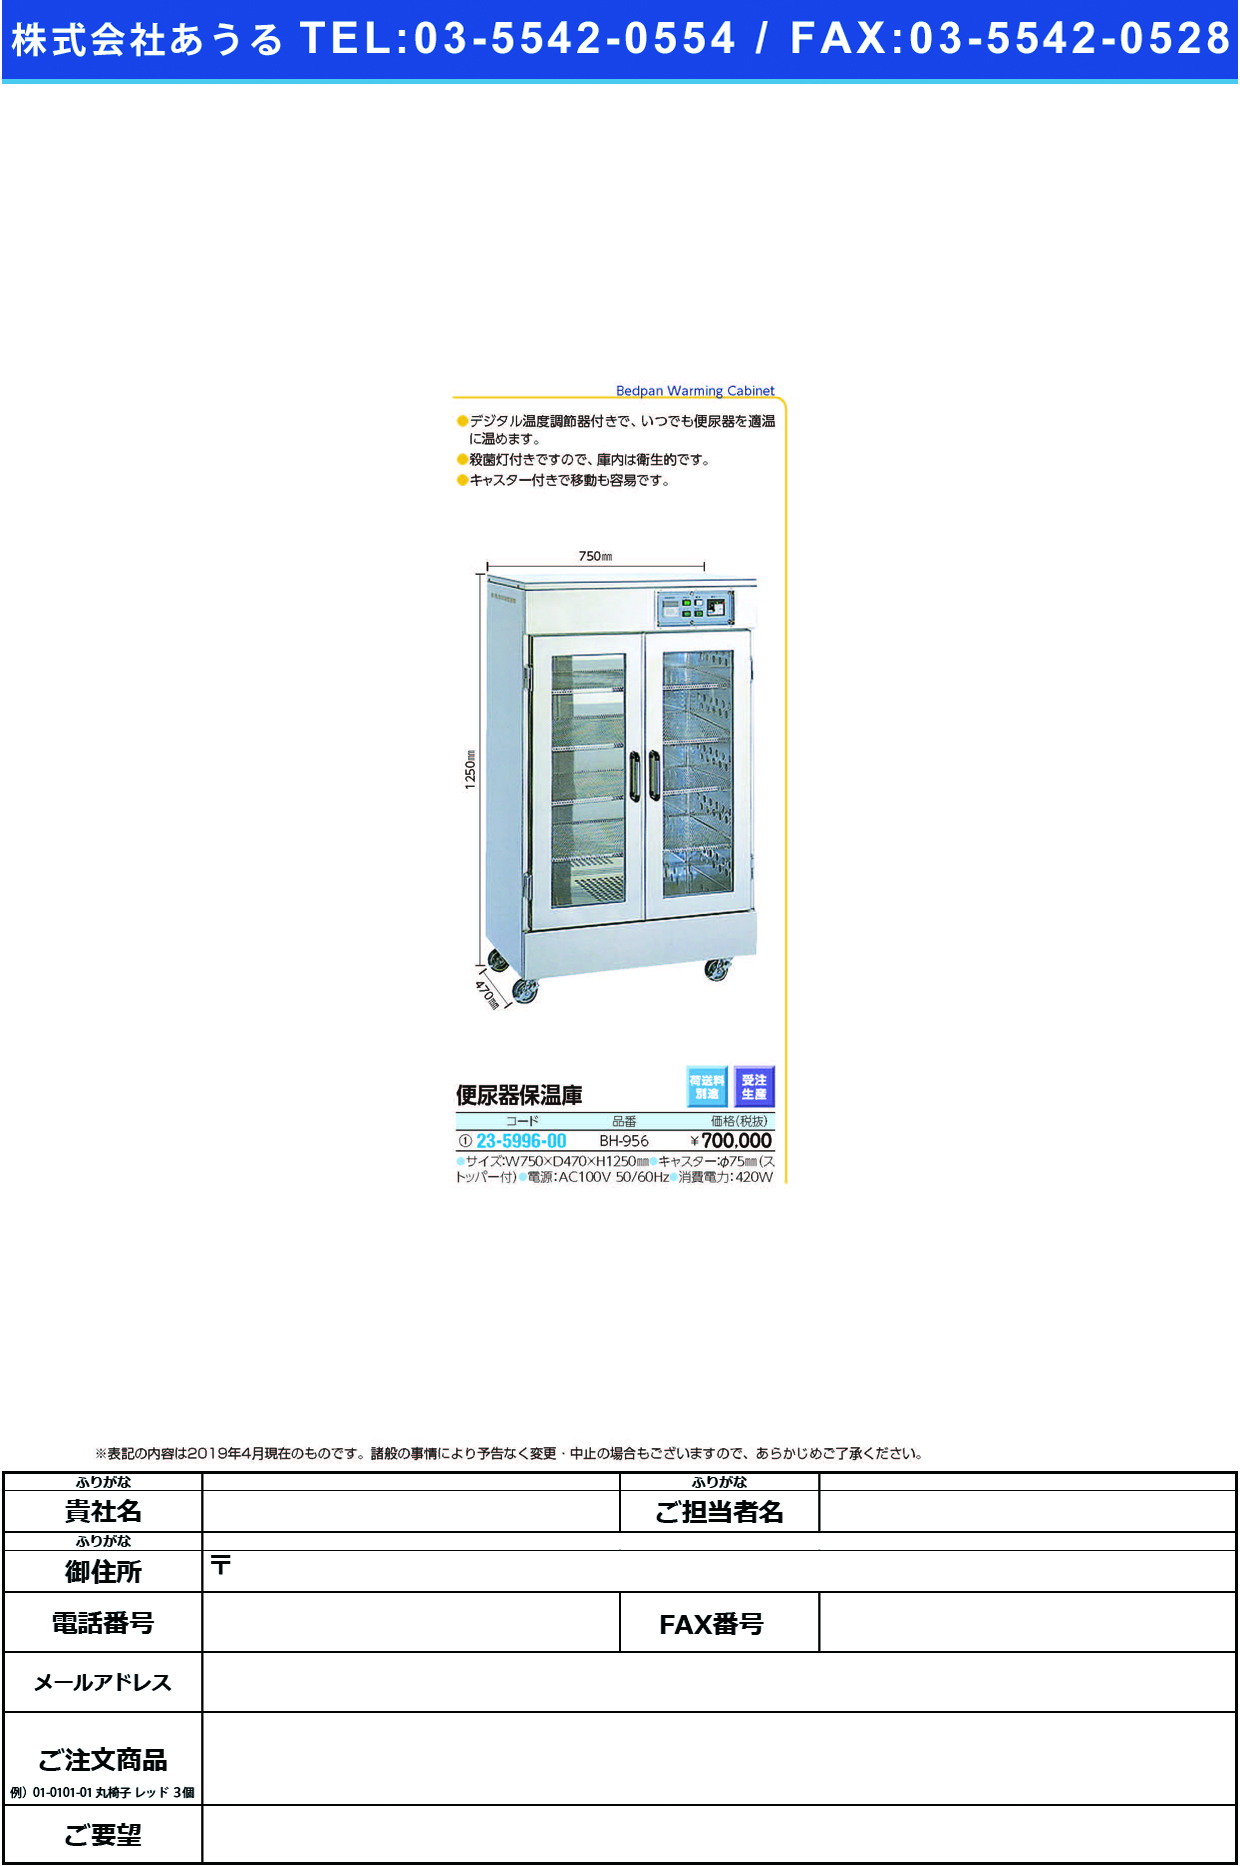 (23-5996-00)便尿器保温庫 BH-956 ﾍﾞﾝﾆｮｳｷﾎｵﾝｺ【1台単位】【2019年カタログ商品】